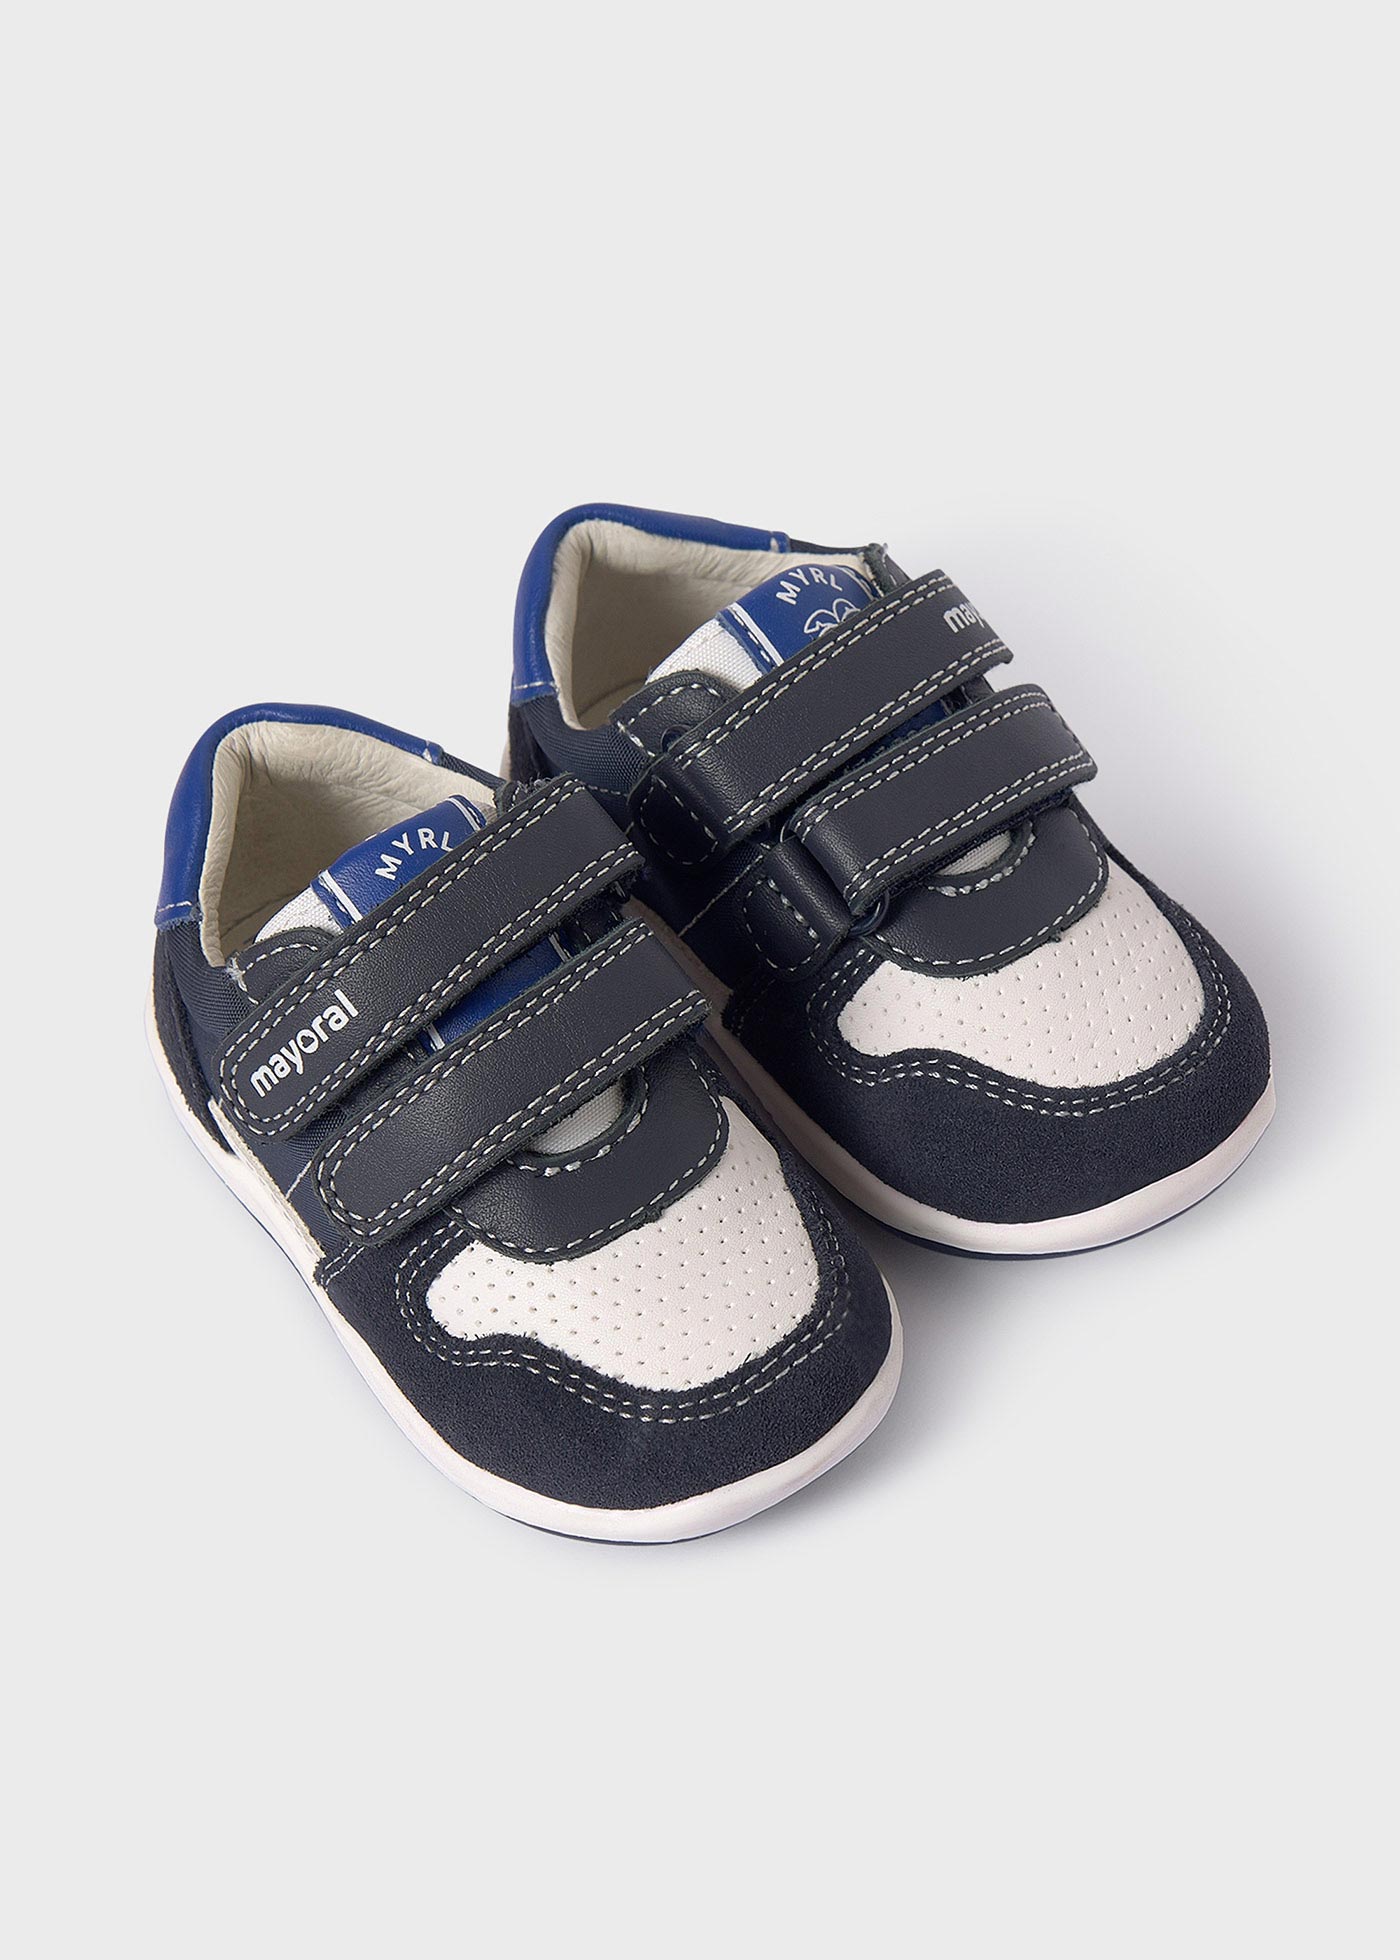 Παπούτσια διπλό βέλκρο βιώσιμο δέρμα μωρό